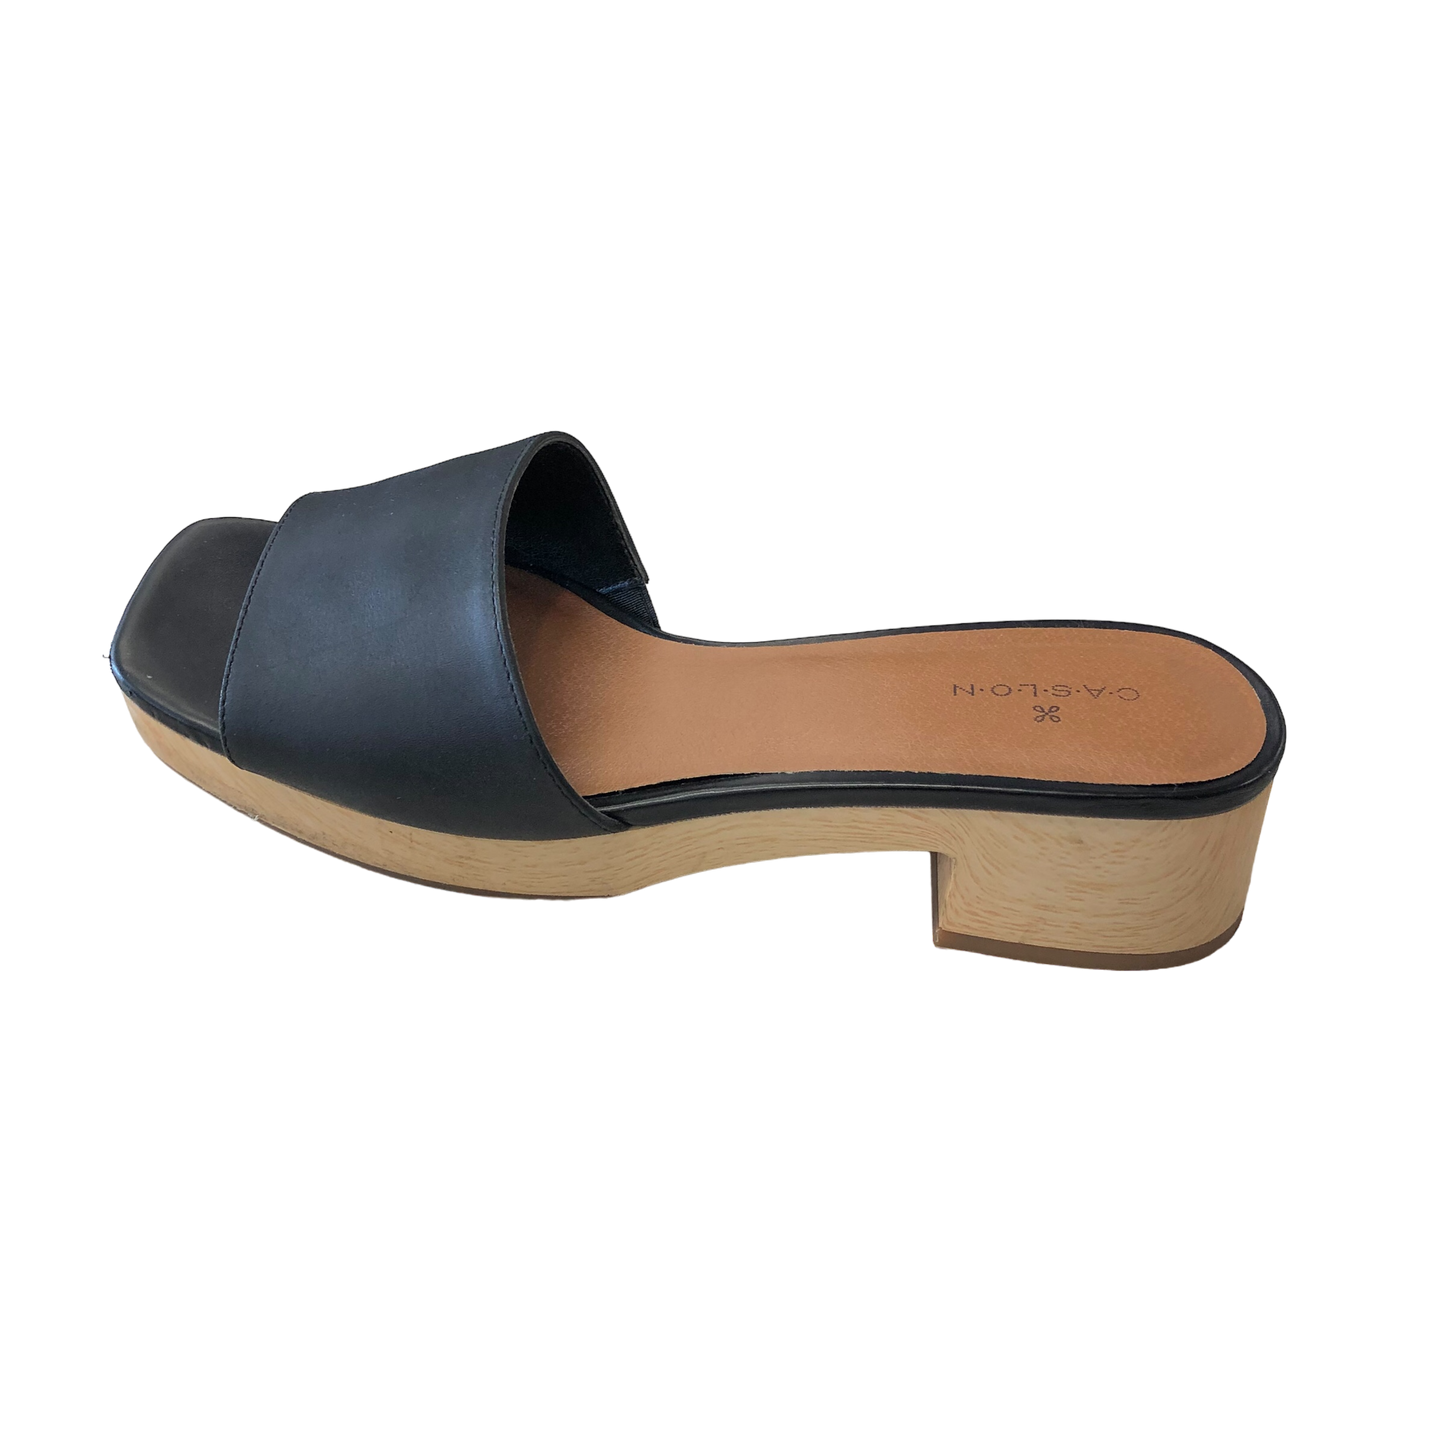 Black Shoes Heels Block Caslon, Size 8